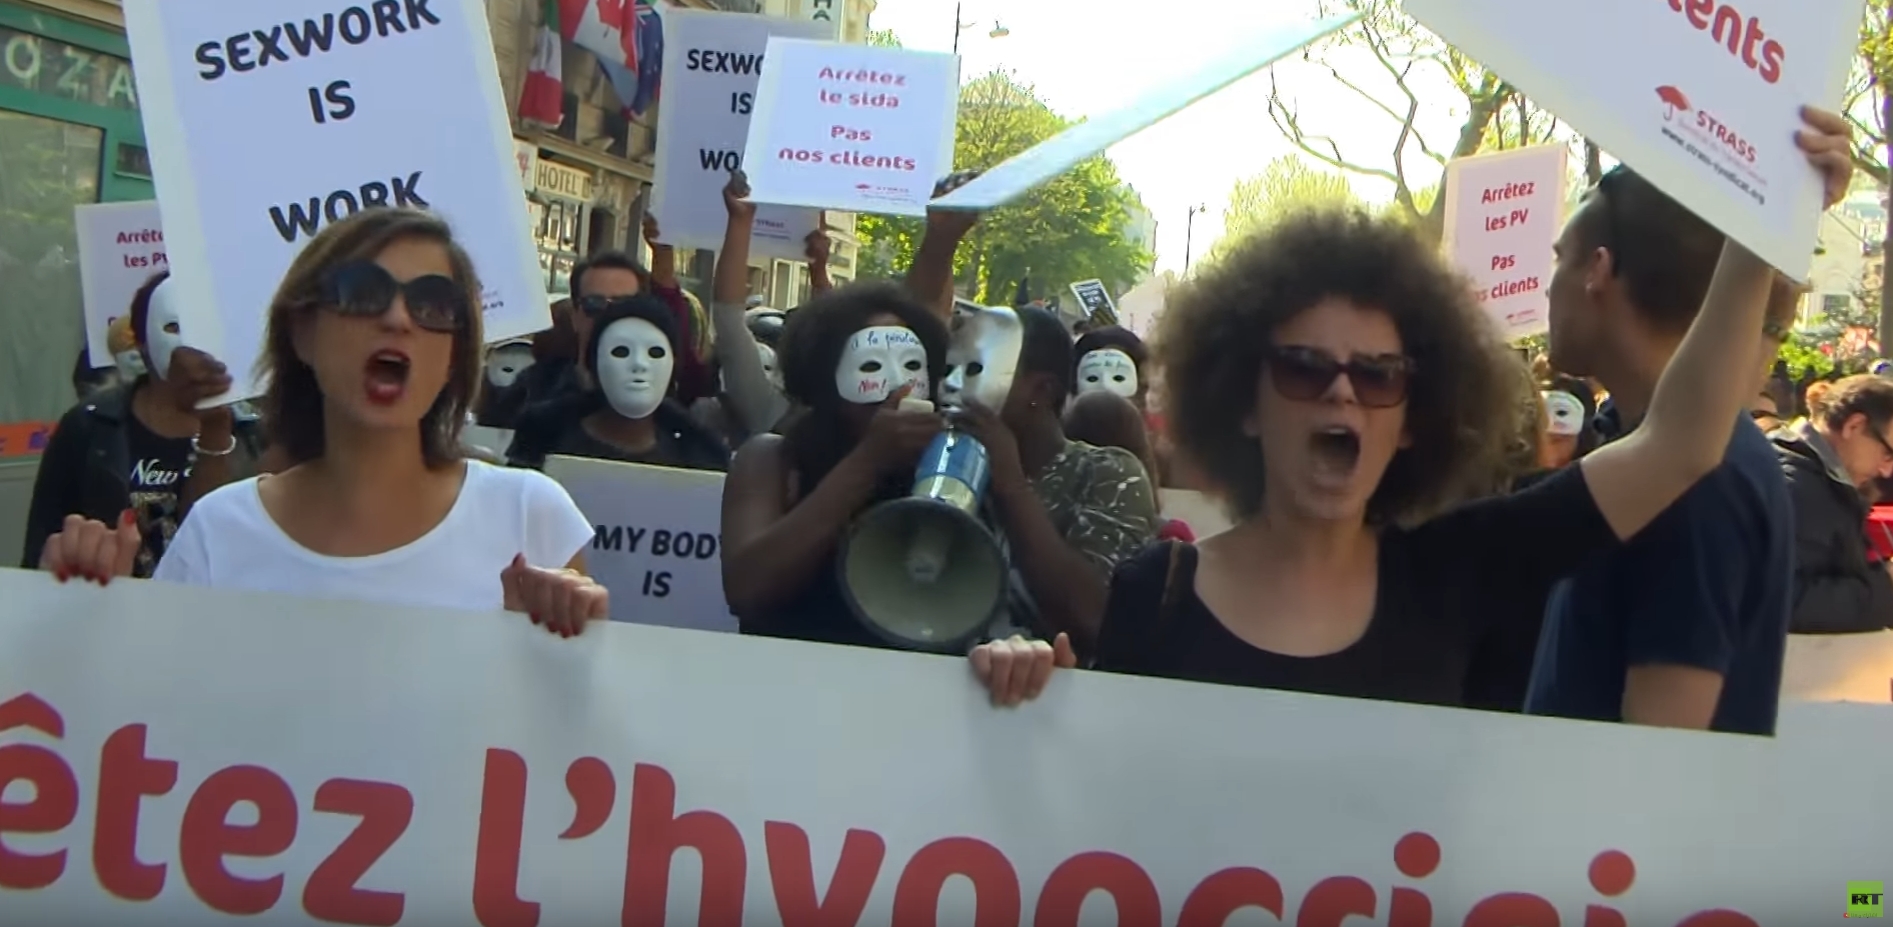 مومسات باريس يخرجن في تظاهرة احتجاجية ضد قانون يعاقب زبائنهن